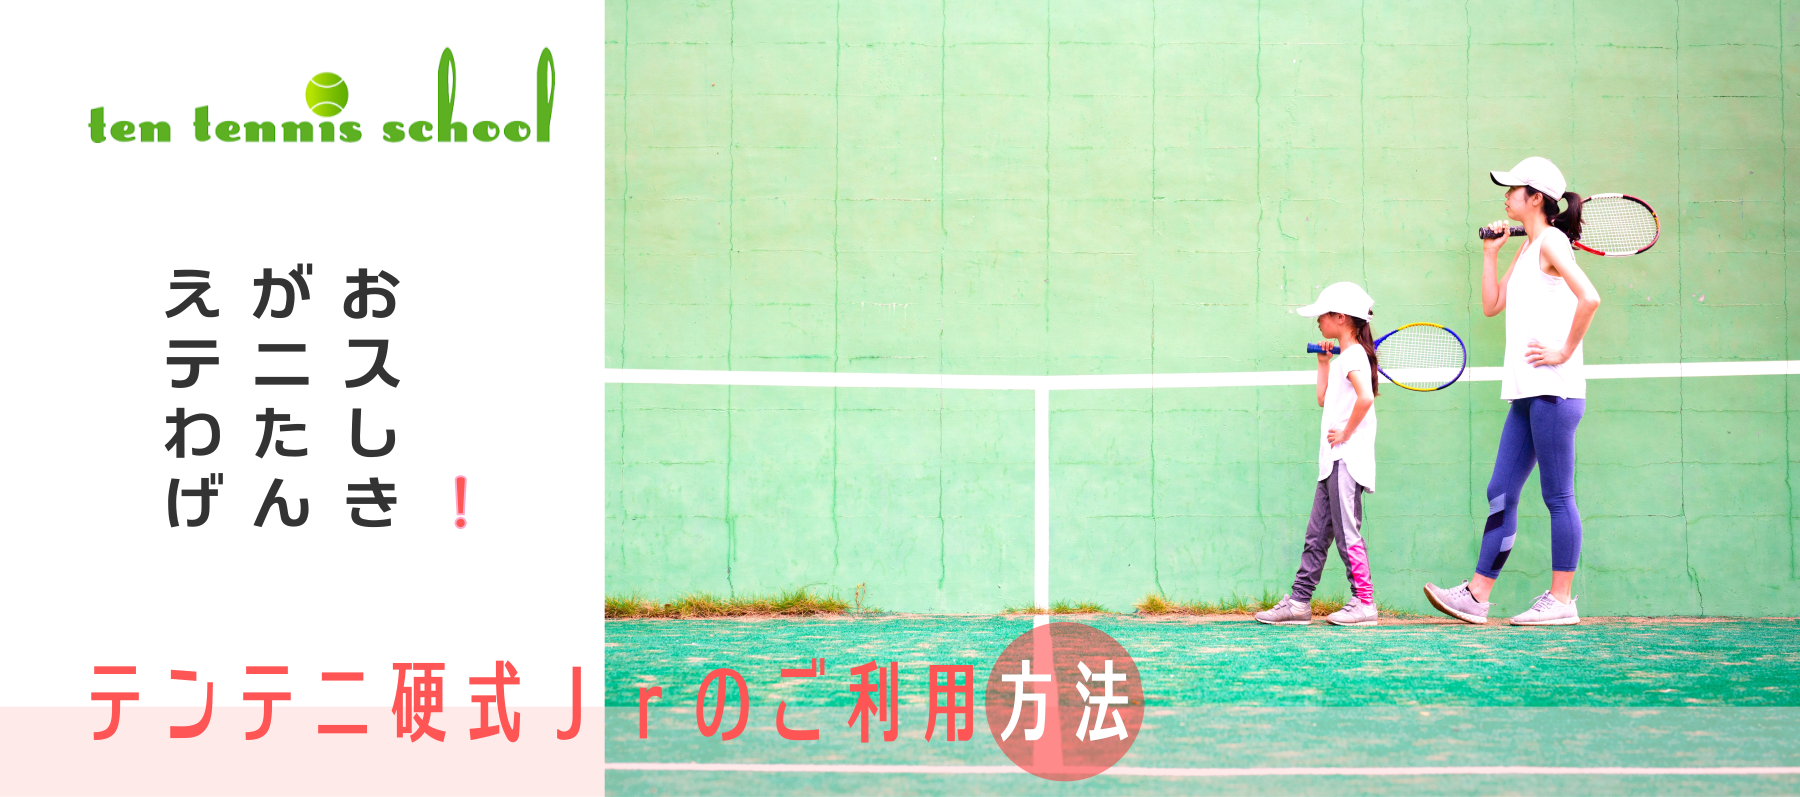 愛知高浜のテンテニススクール、硬式ジュニアご利用方法